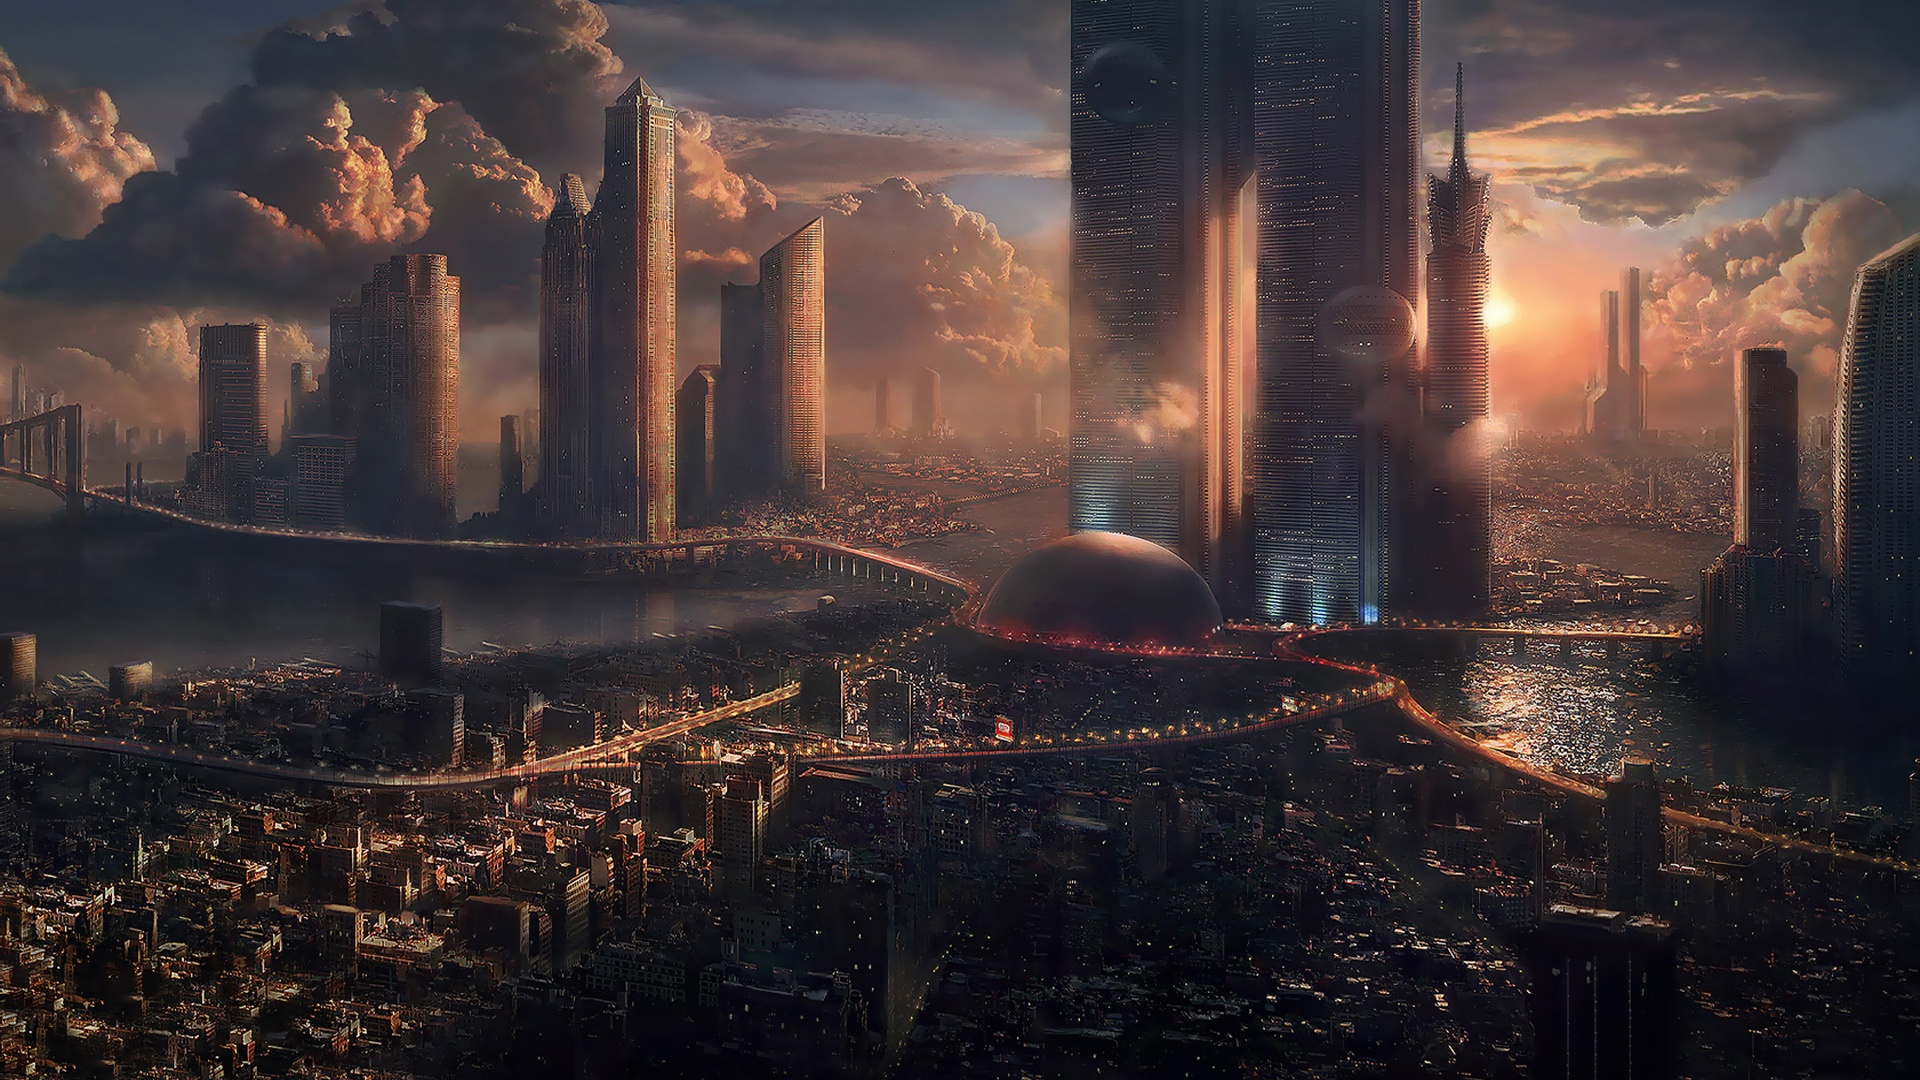 Thành phố tương lai: Nếu bạn yêu thích những kiểu tương lai hóa của các bộ phim khoa học viễn tưởng, bạn sẽ không muốn bỏ lỡ bức ảnh liên quan đến chủ đề thành phố tương lai của chúng tôi. Hãy cùng khám phá một thế giới tương lai đầy màu sắc mà chúng tôi mang đến.